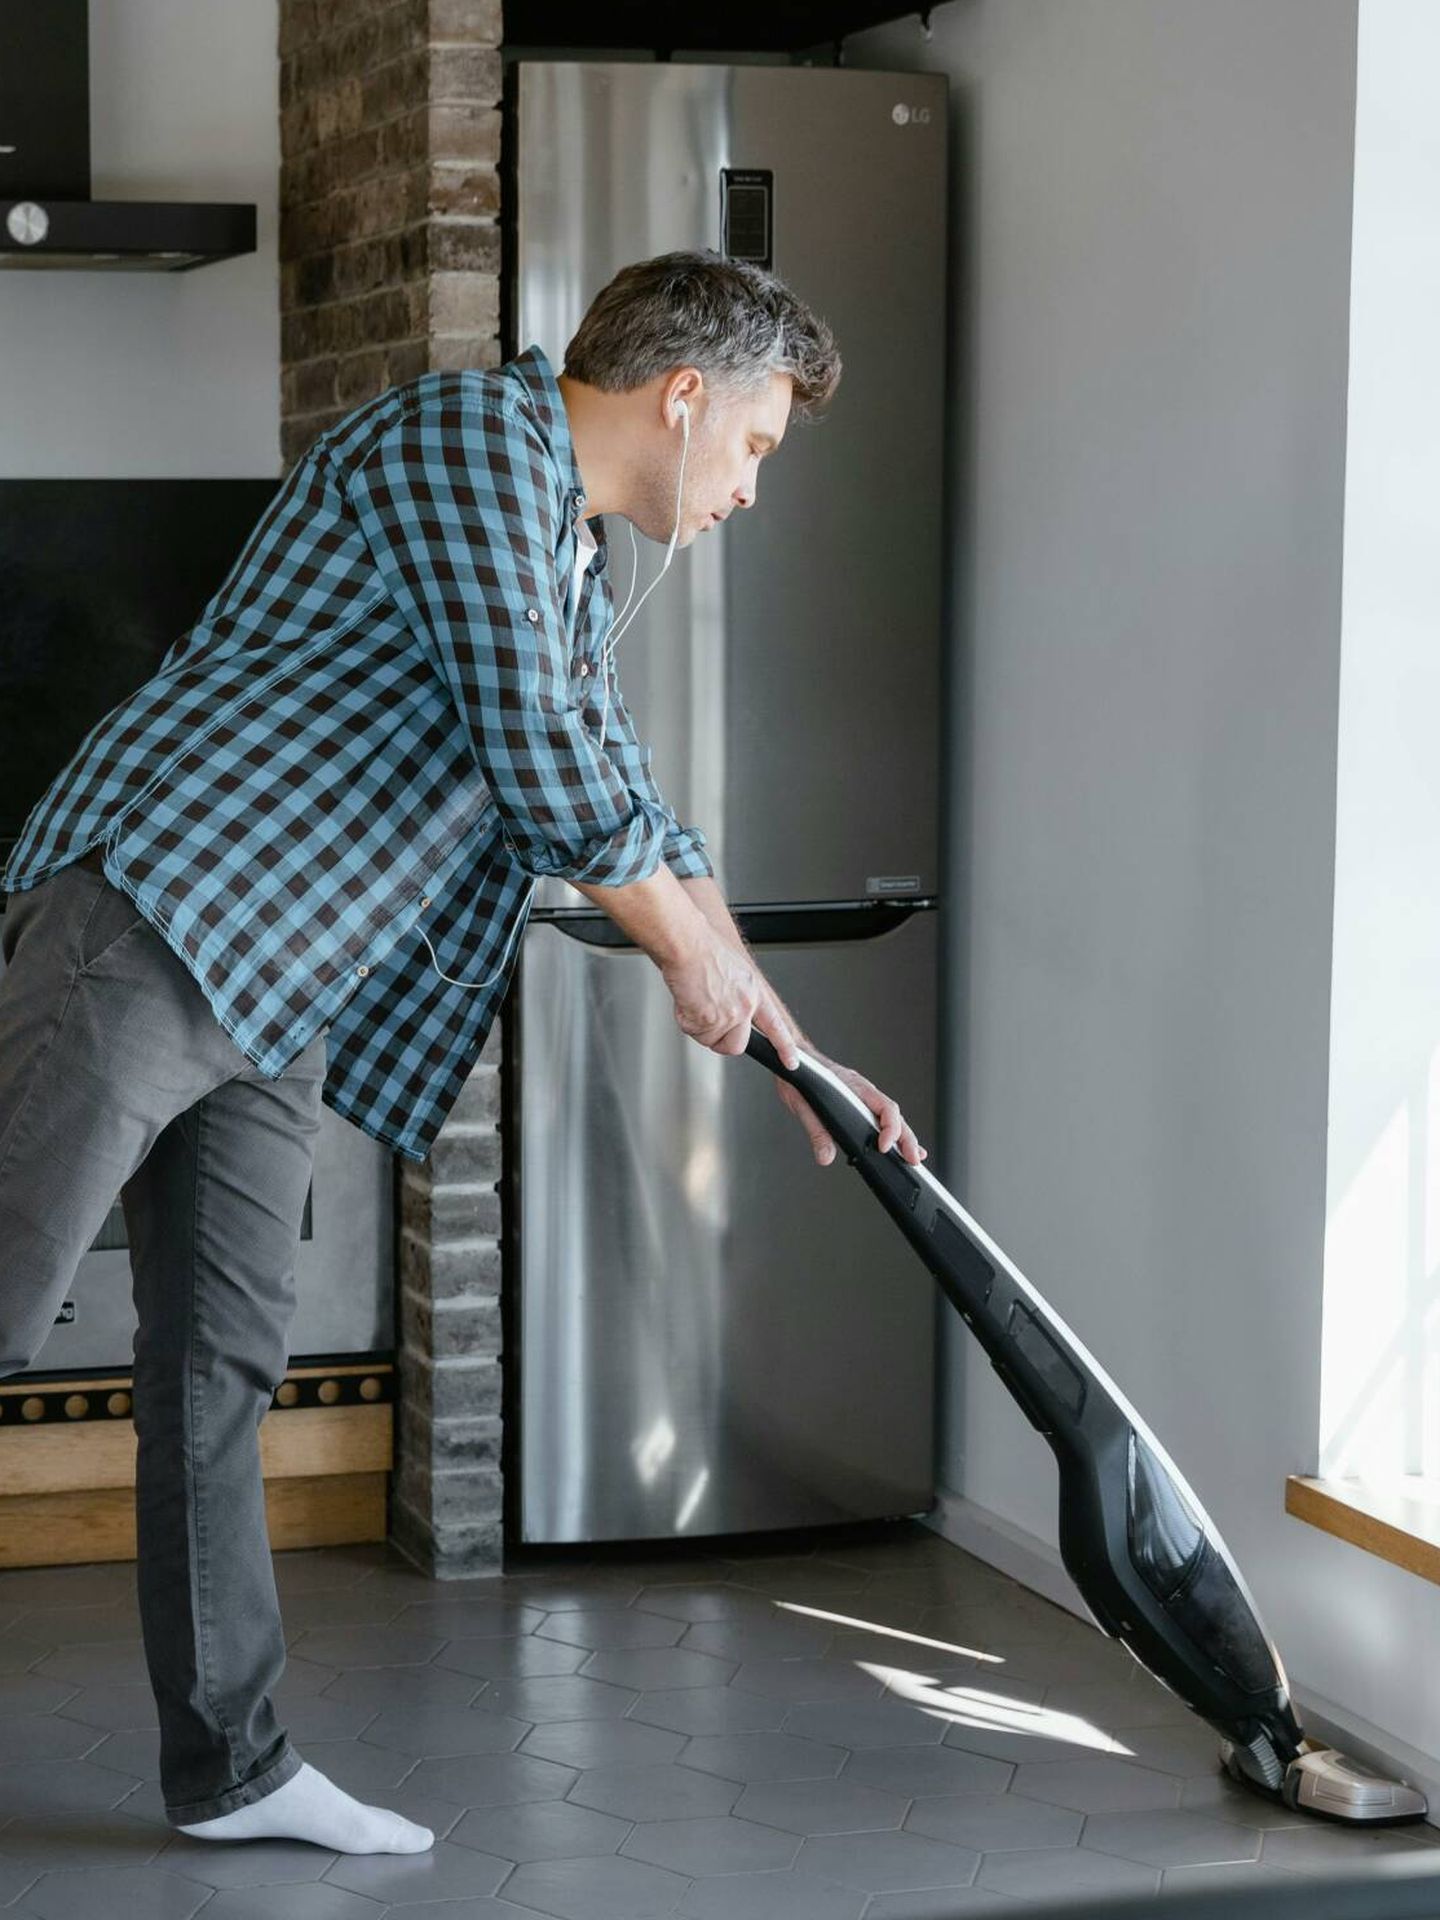 Descubre cómo limpiar la casa en 5 minutos. (Pexels/Mart Production)